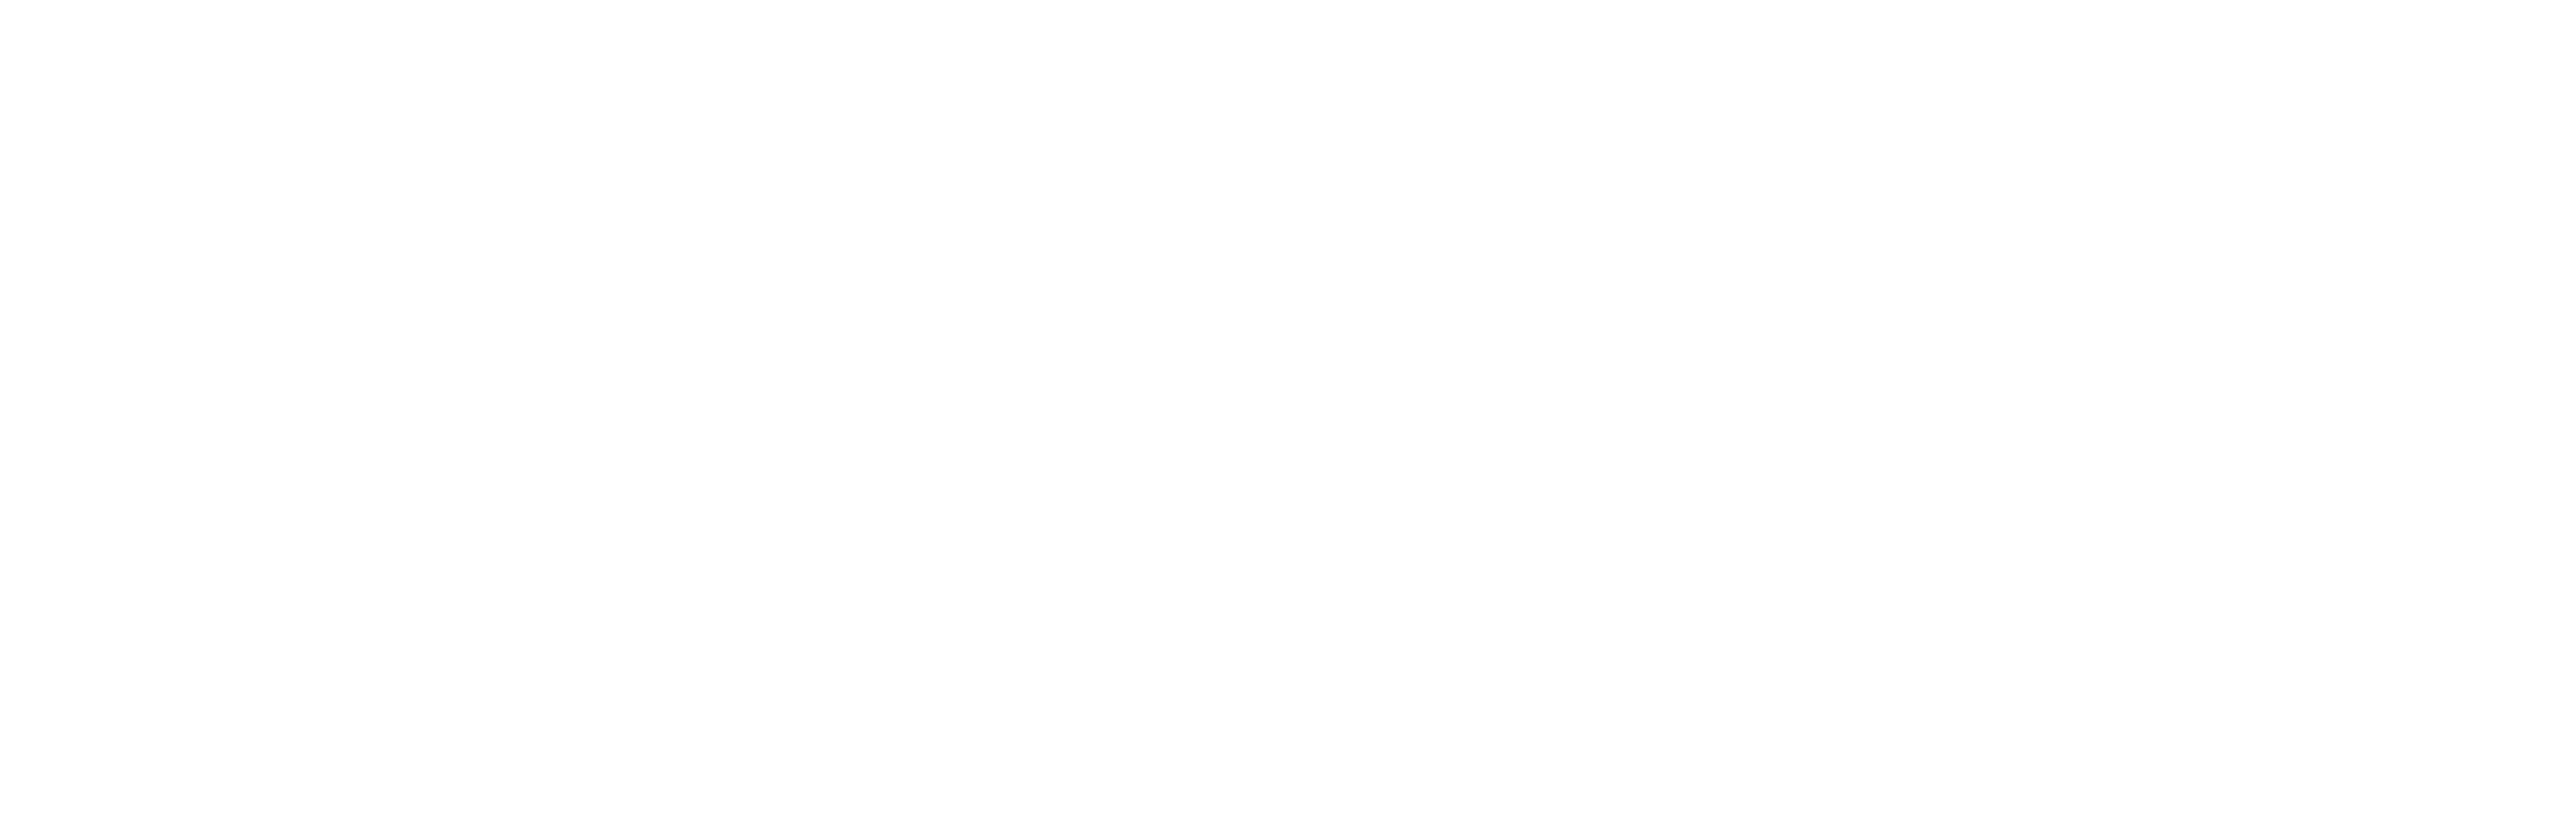 Dermena Lab